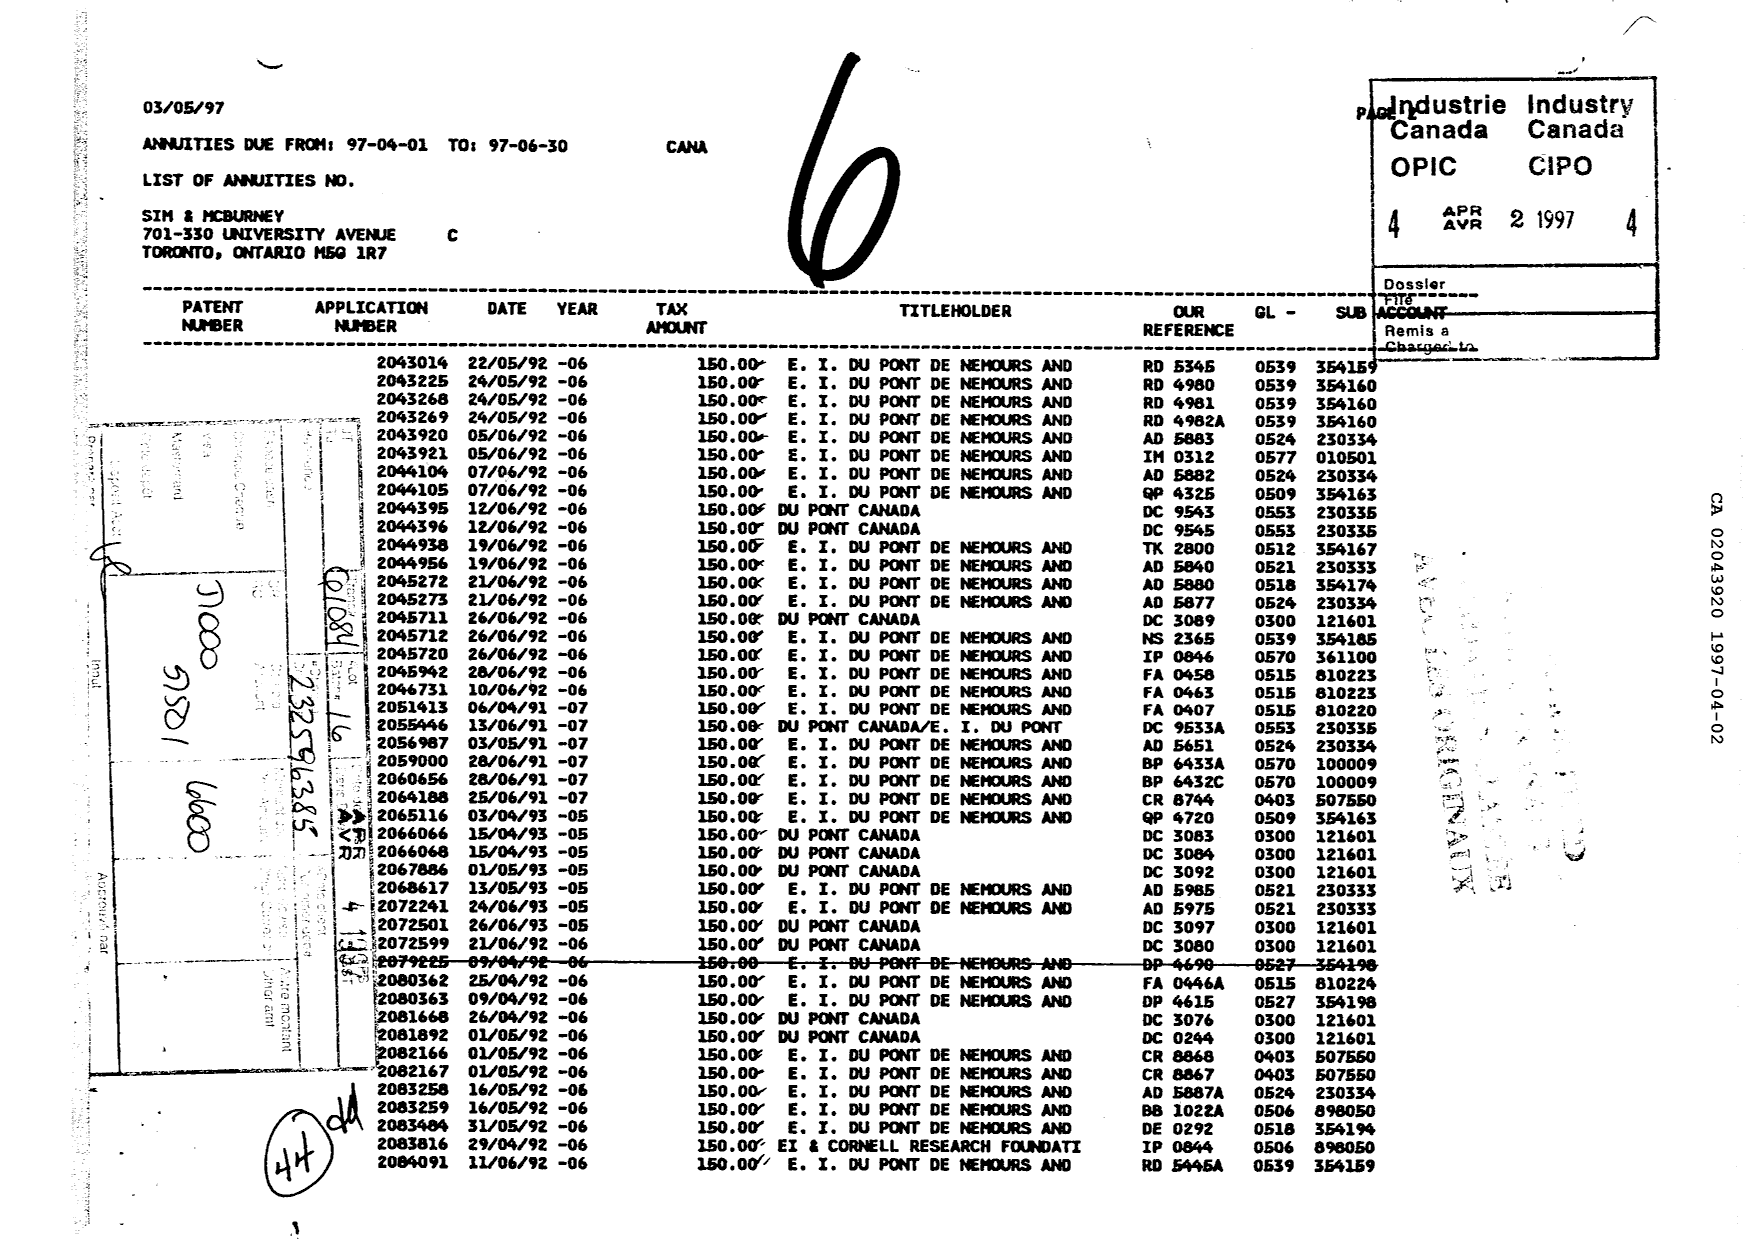 Document de brevet canadien 2043920. Taxes 19961202. Image 1 de 1